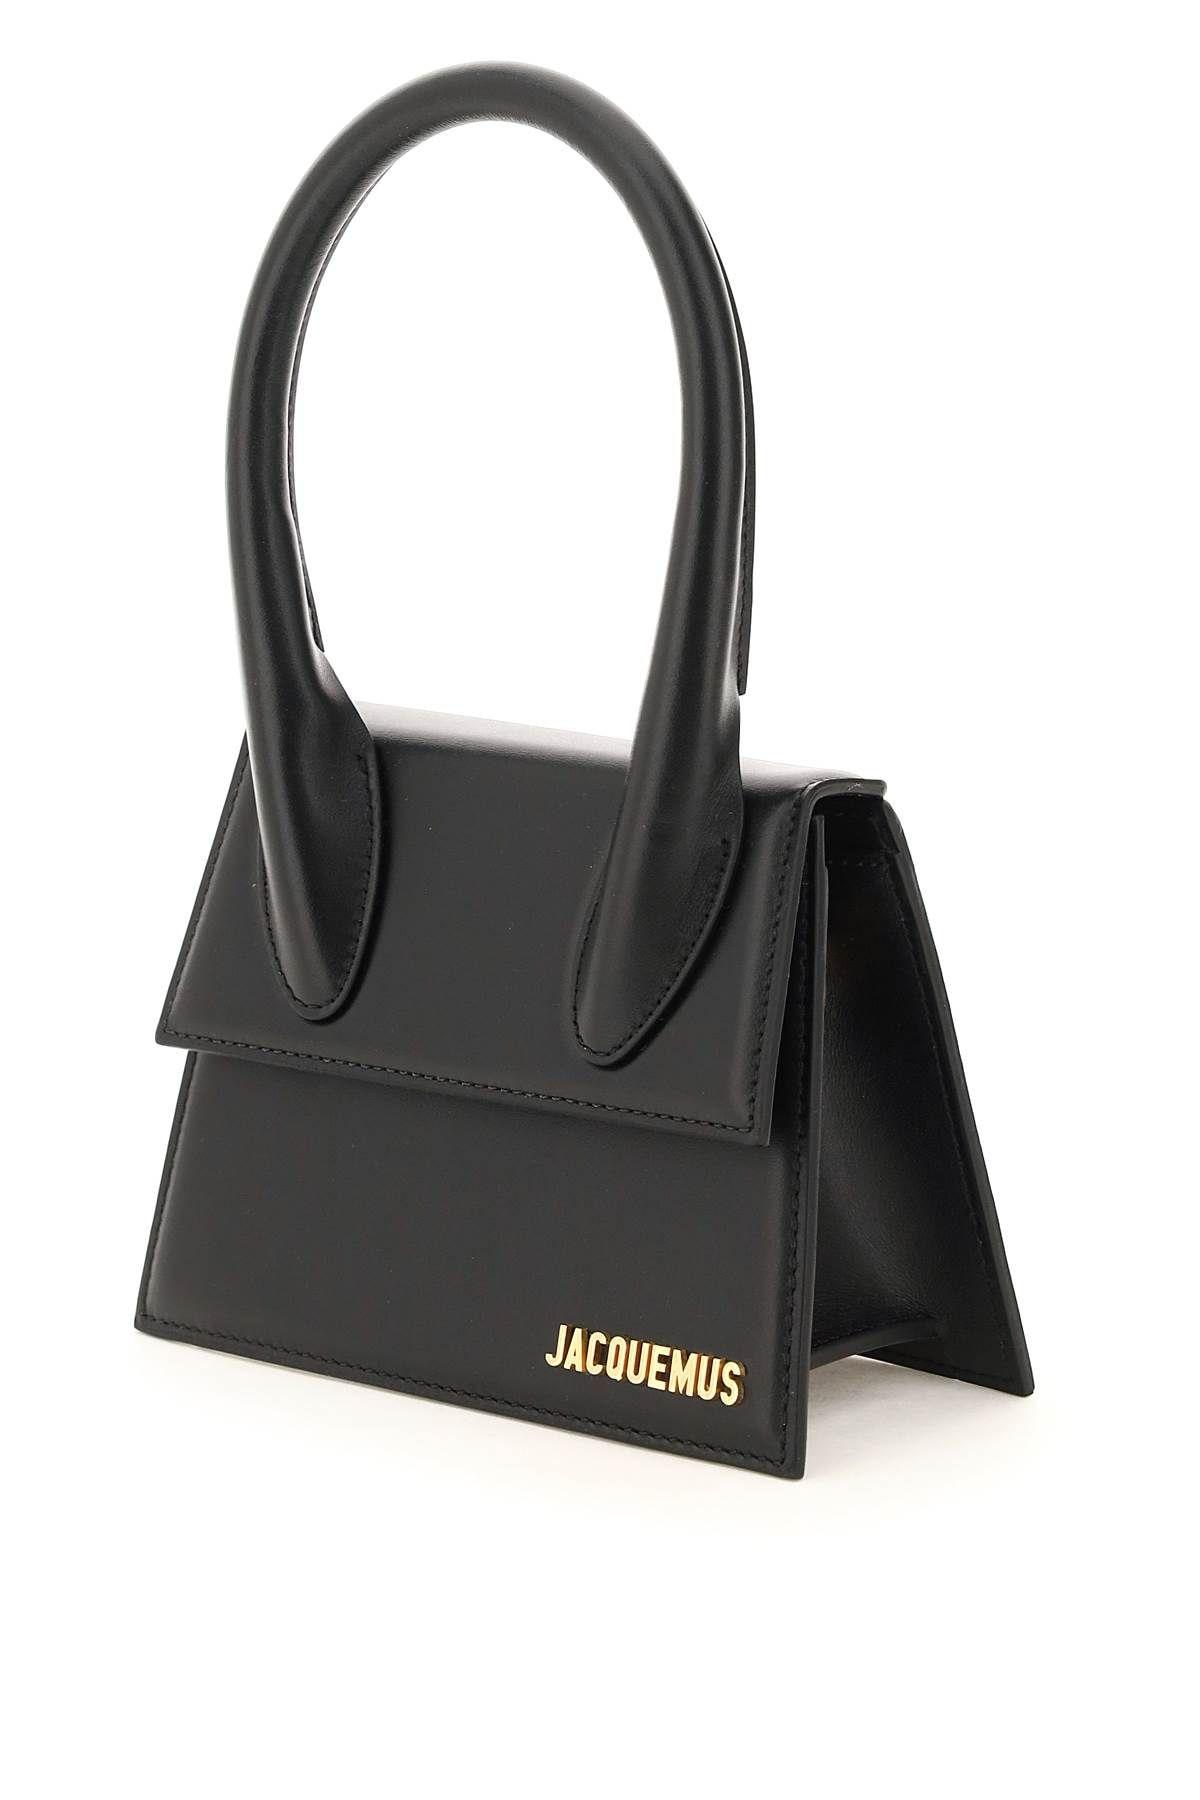 Jacquemus Le Chiquito Micro Bag In Black